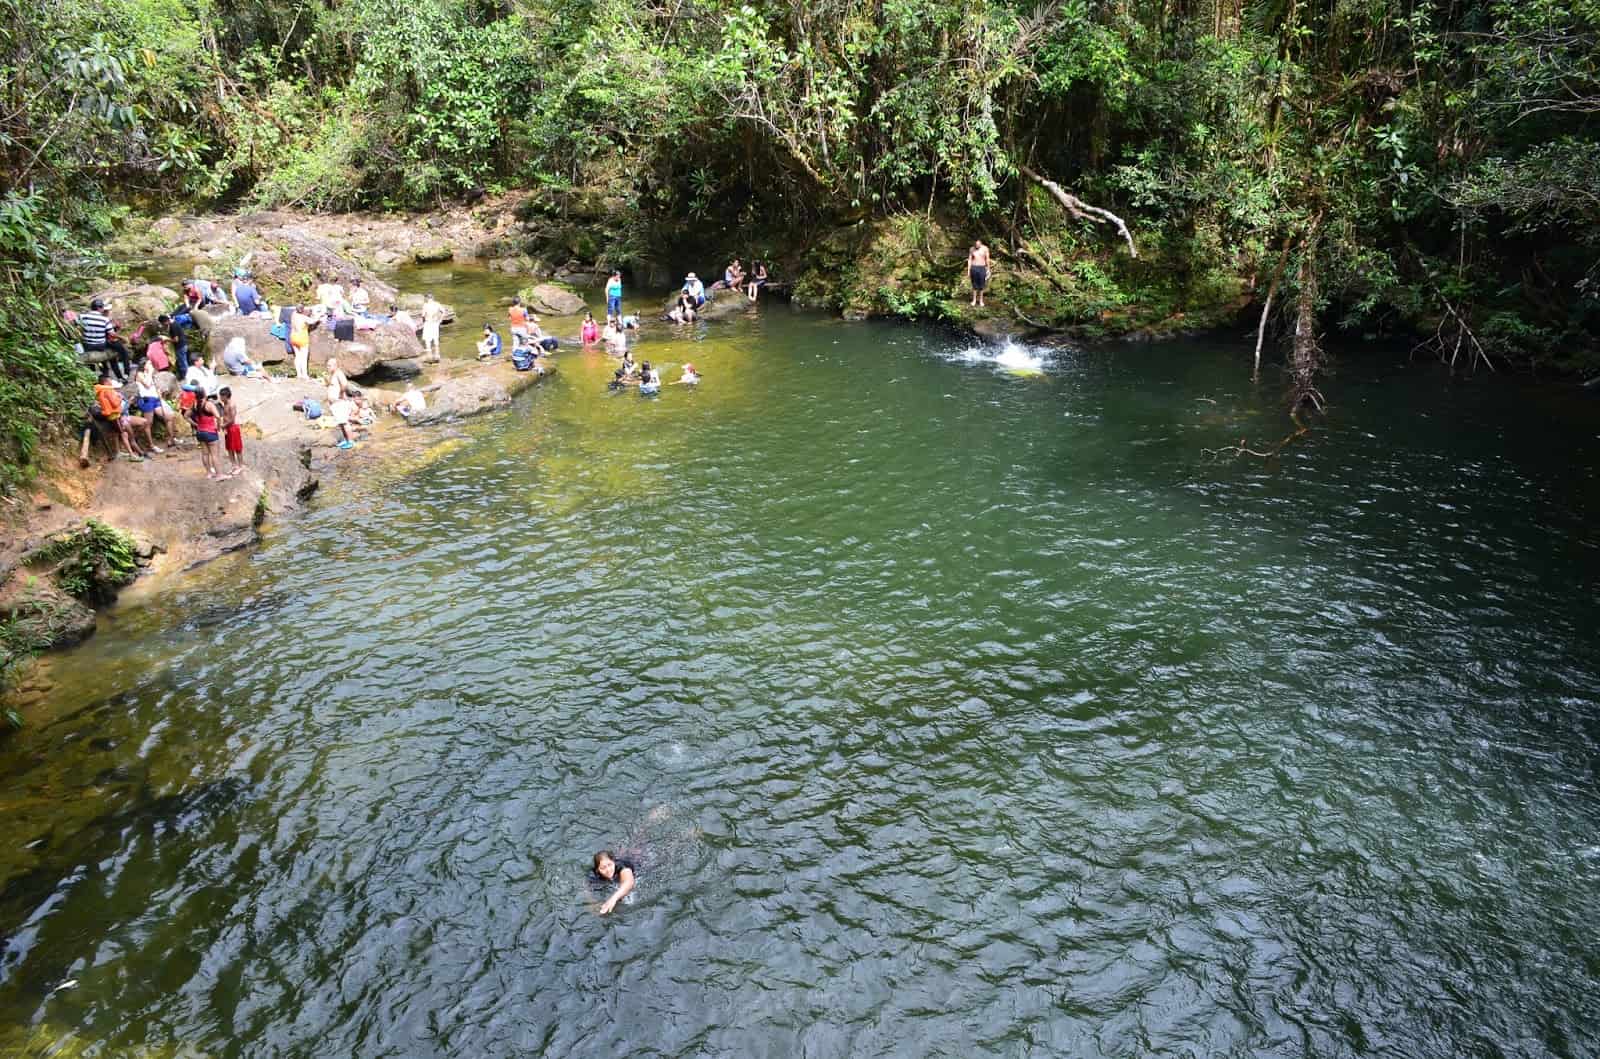 Swimming hole at Fin del Mundo in Mocoa, Putumayo, Colombia